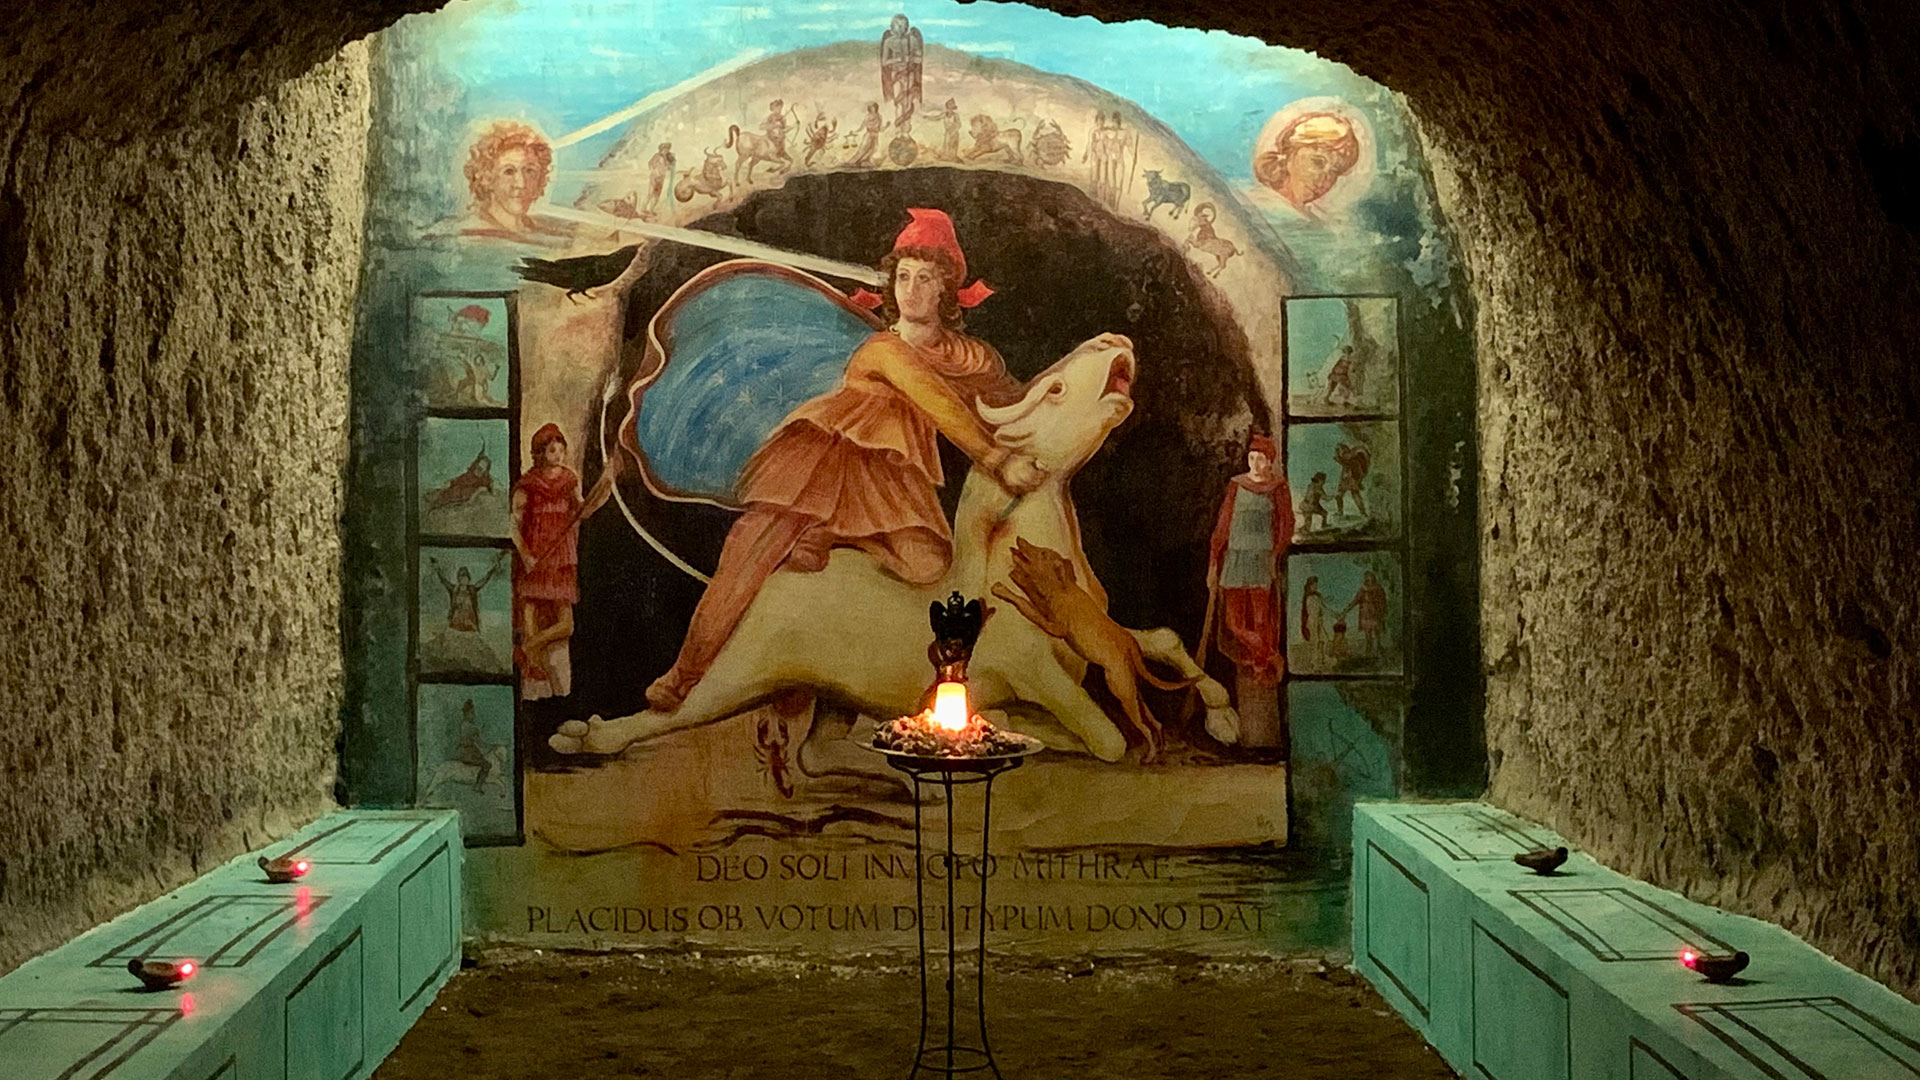 Cómo es “El Laberinto”, el perturbador túnel construido por esclavos romanos que reabrió sus puertas en Roma